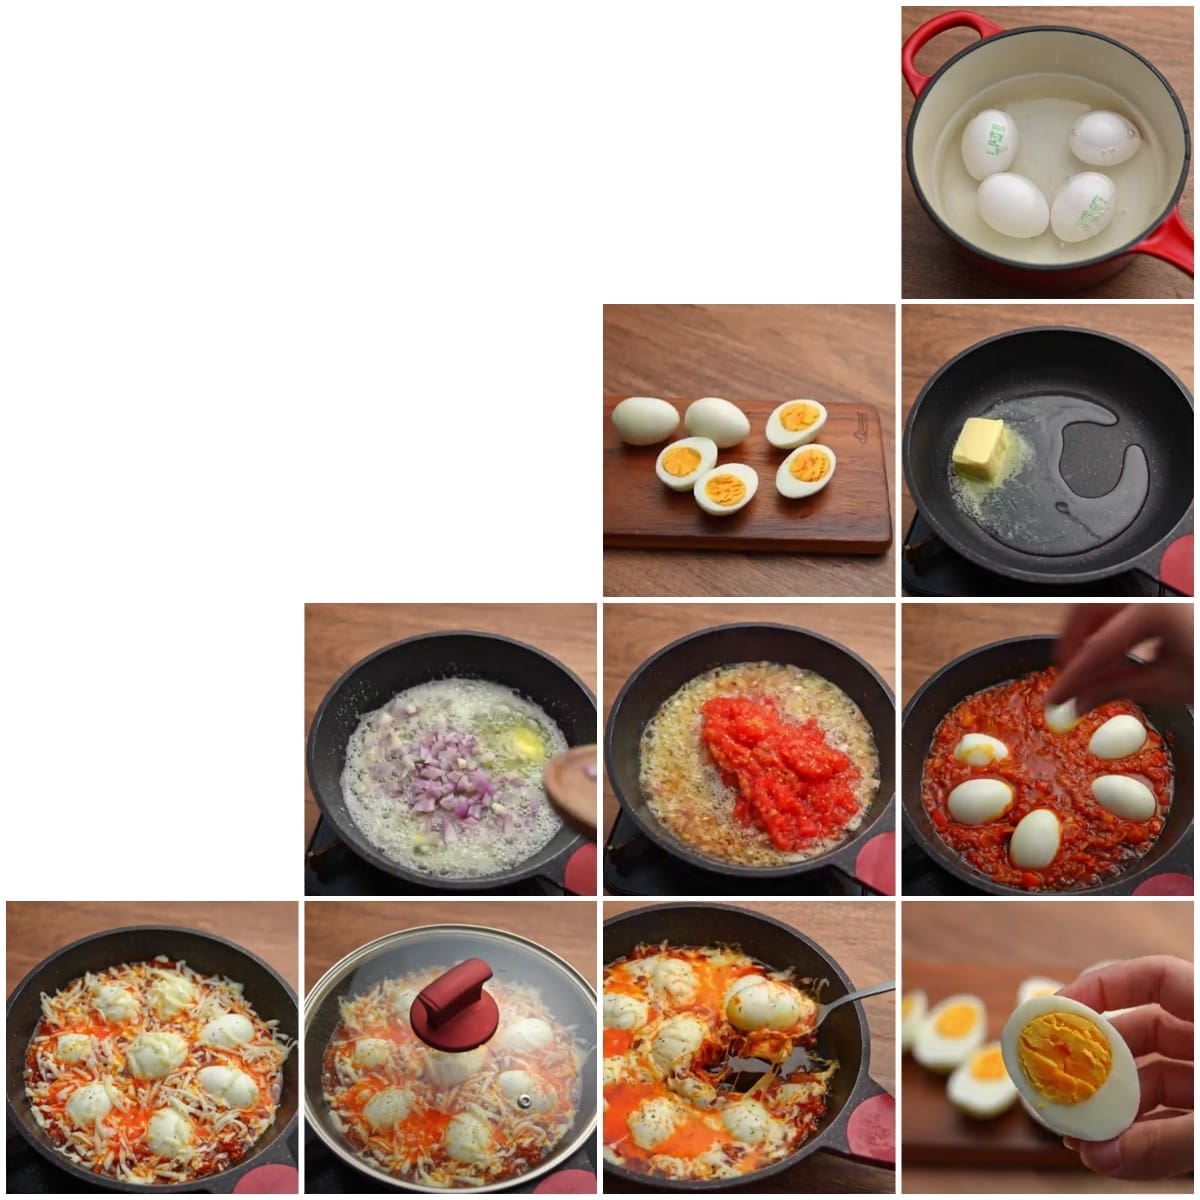 البيض على الطريقة التركية: وصفة لذيذة وسهلة التحضير